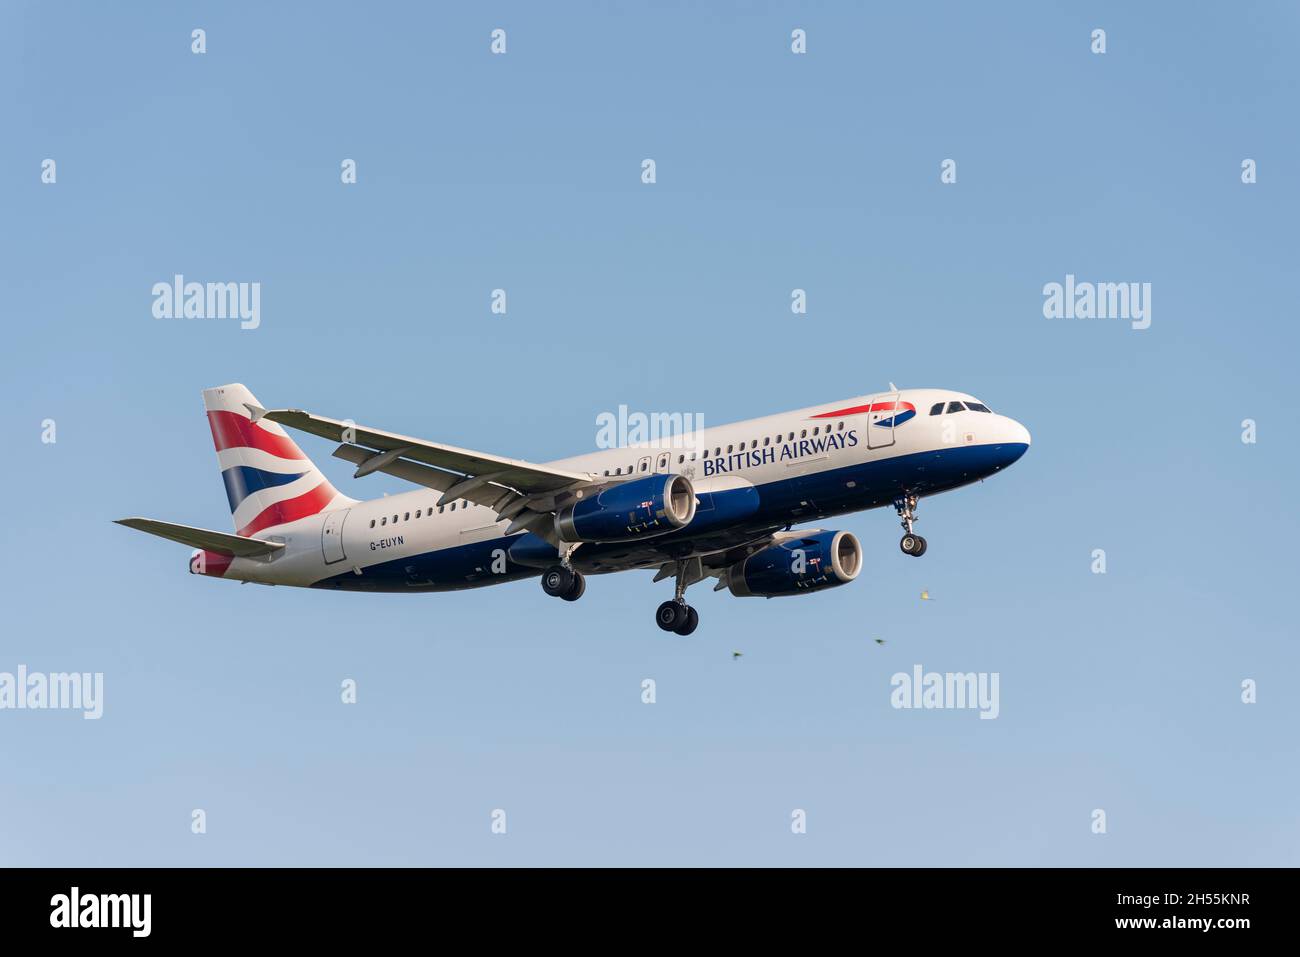 British Airways Airbus A320 232 Airliner-Düsenflugzeug G-EUYN bei der Landung am Flughafen London Heathrow, Großbritannien. Stockfoto